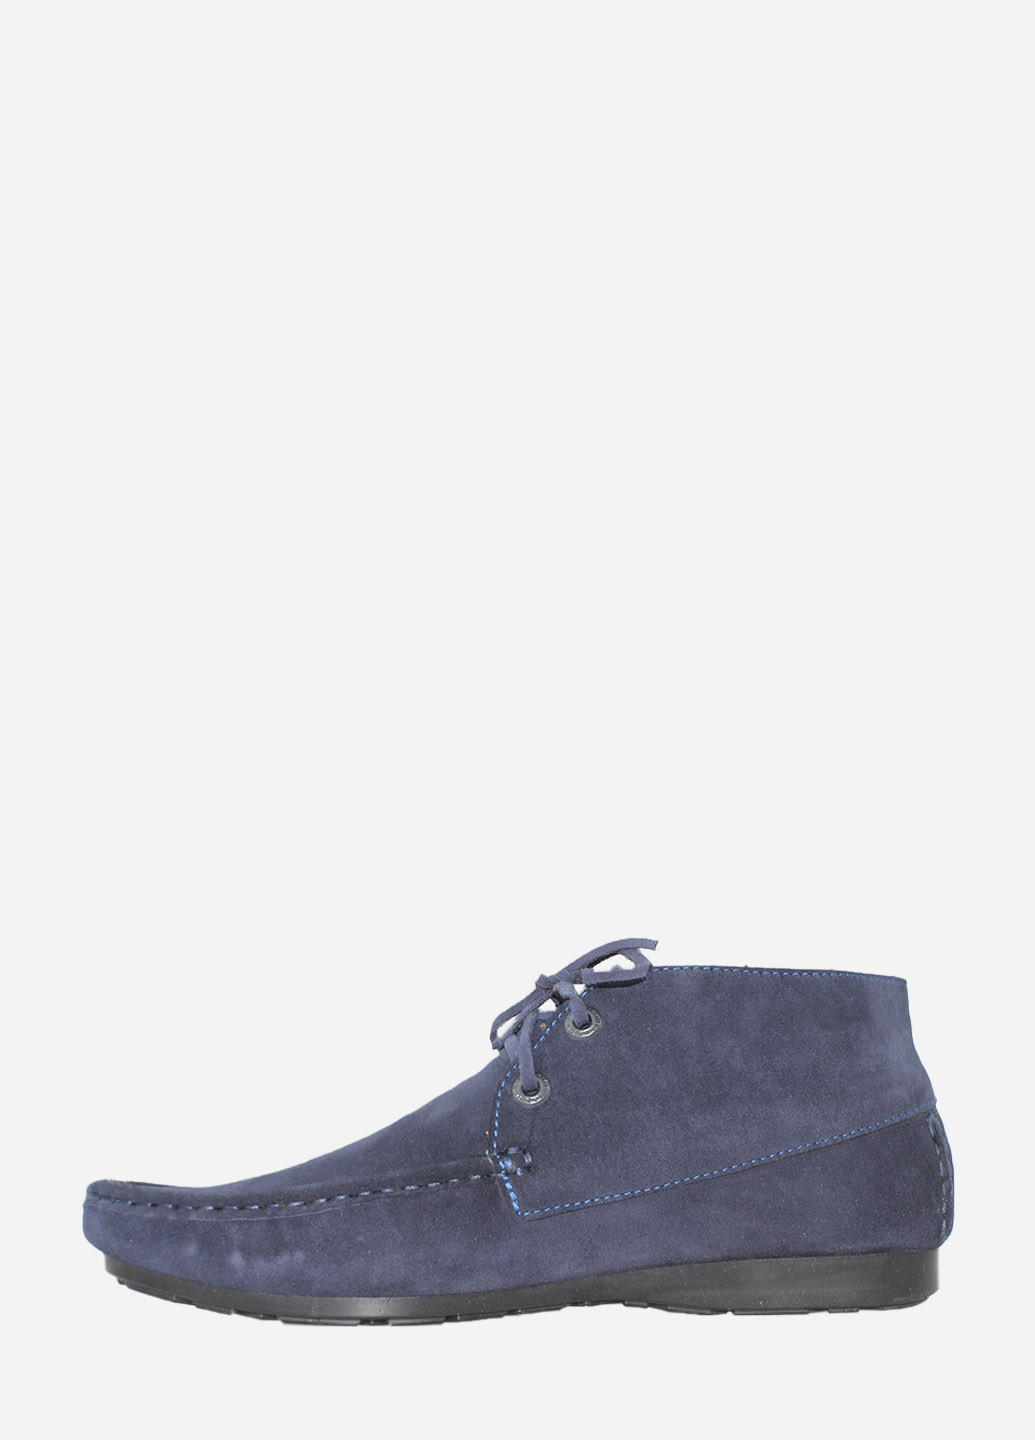 Синие осенние ботинки rt733-04-03 синий Tibet